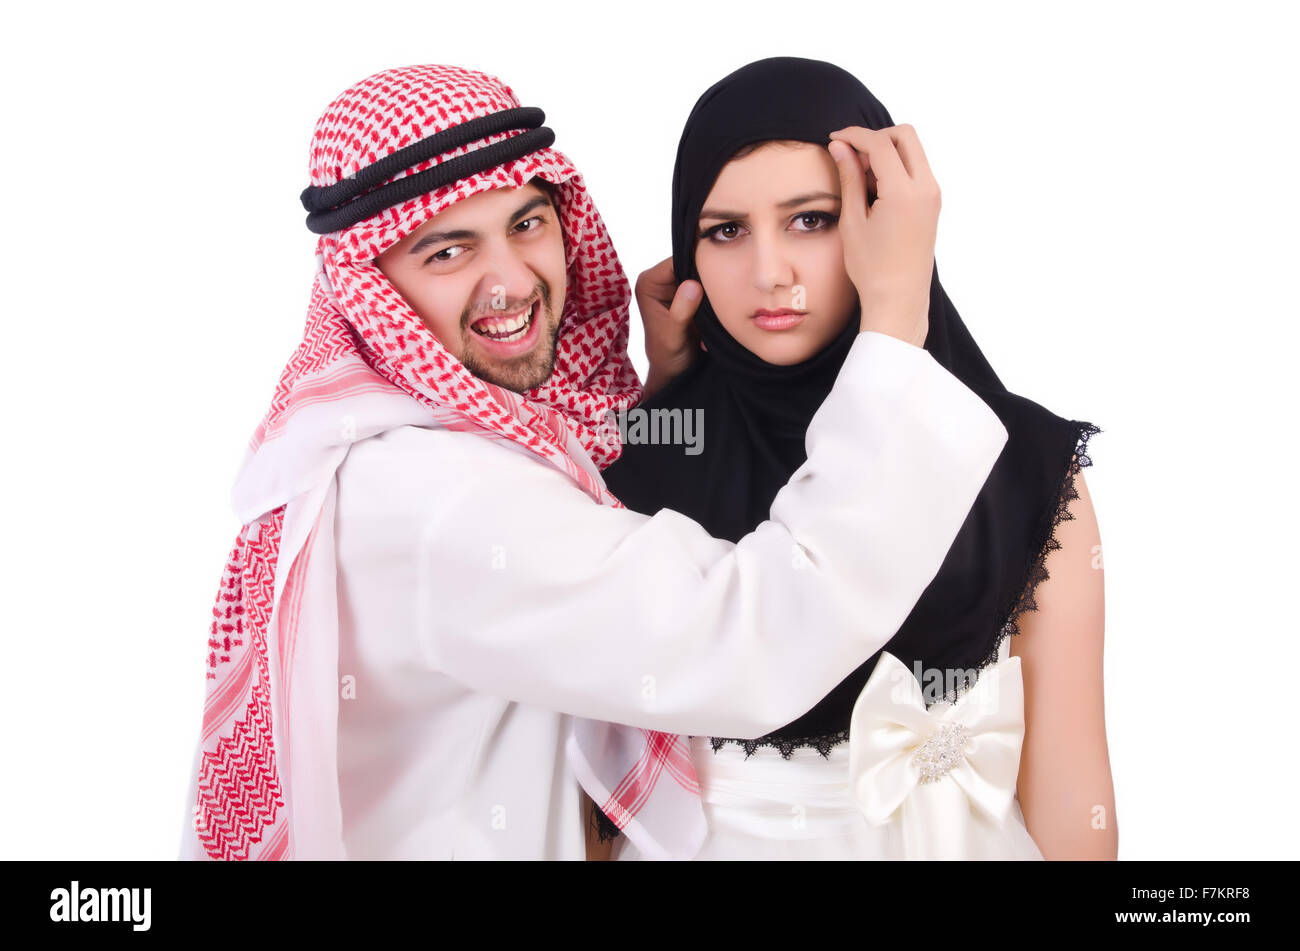 Арабы и русские девушки